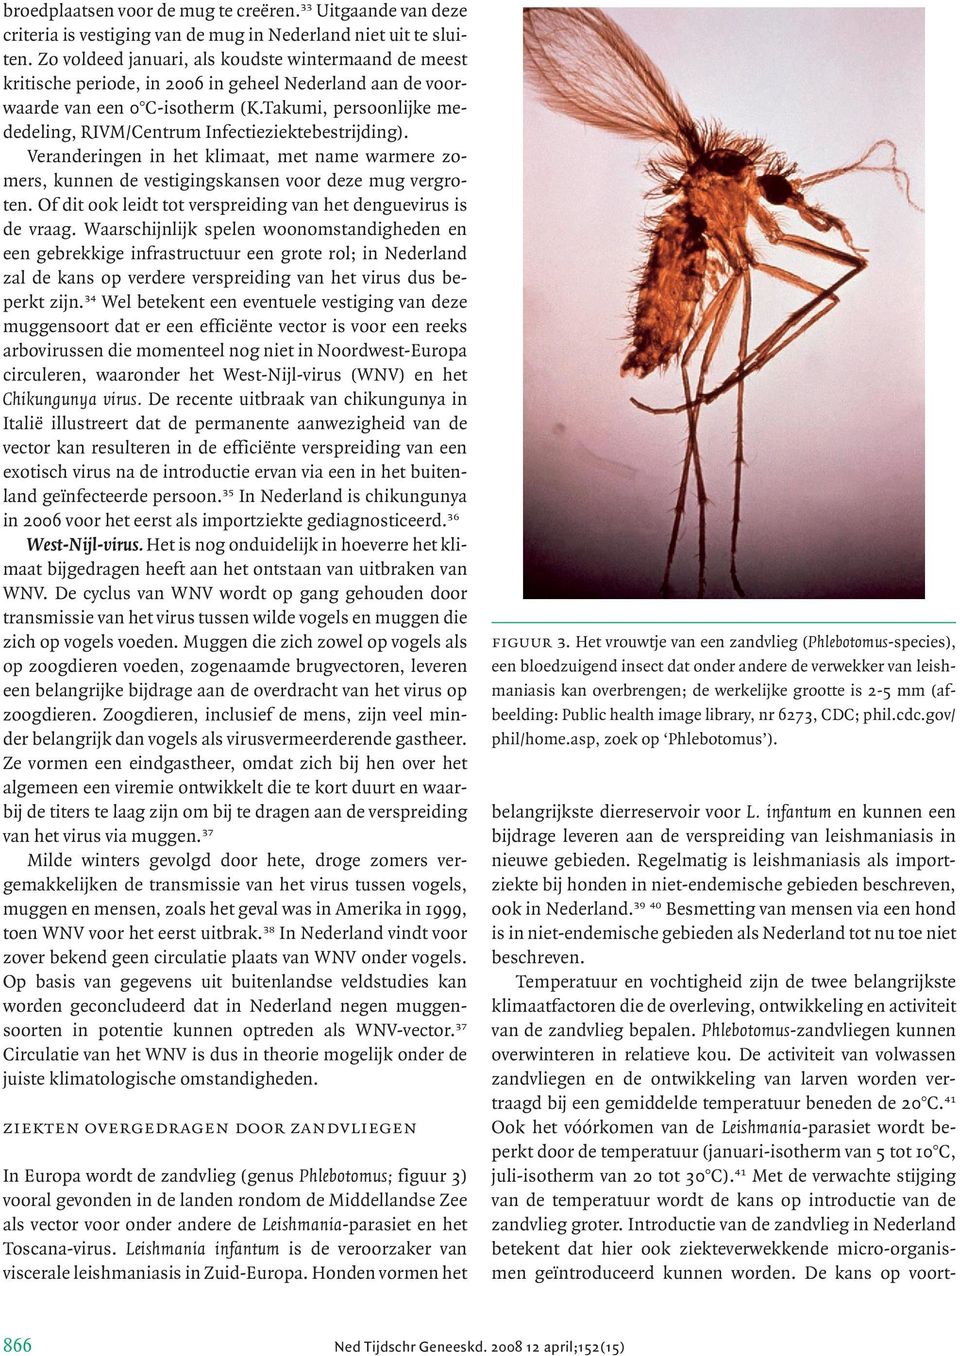 Takumi, persoonlijke mededeling, RIVM/Centrum Infectieziektebestrijding). Veranderingen in het klimaat, met name warmere zomers, kunnen de vestigingskansen voor deze mug vergroten.